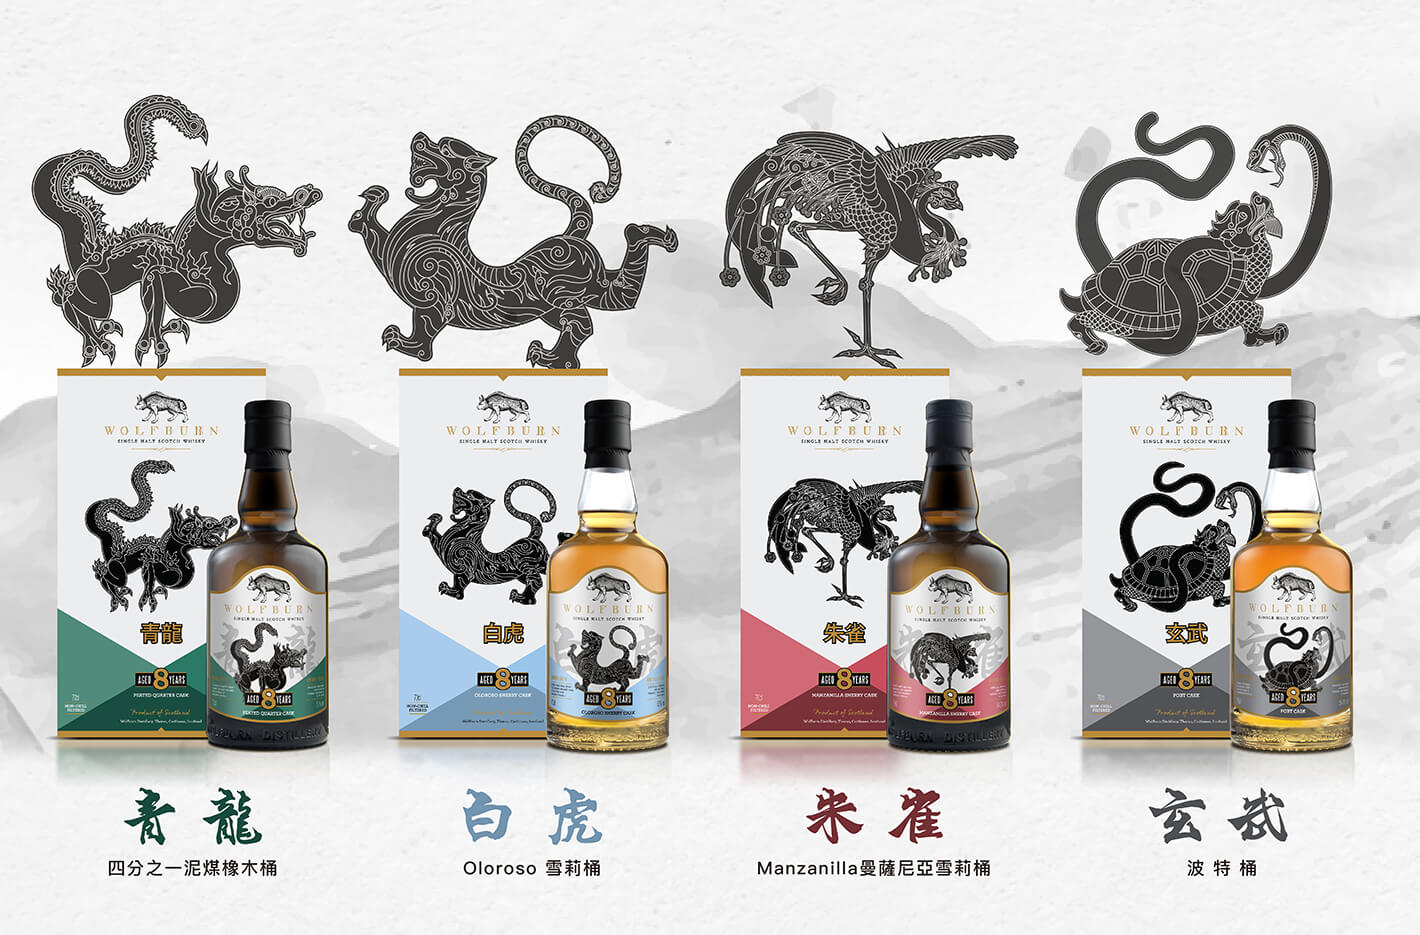 古狼四神獸系列8年威士忌典藏組 亞洲限定發售